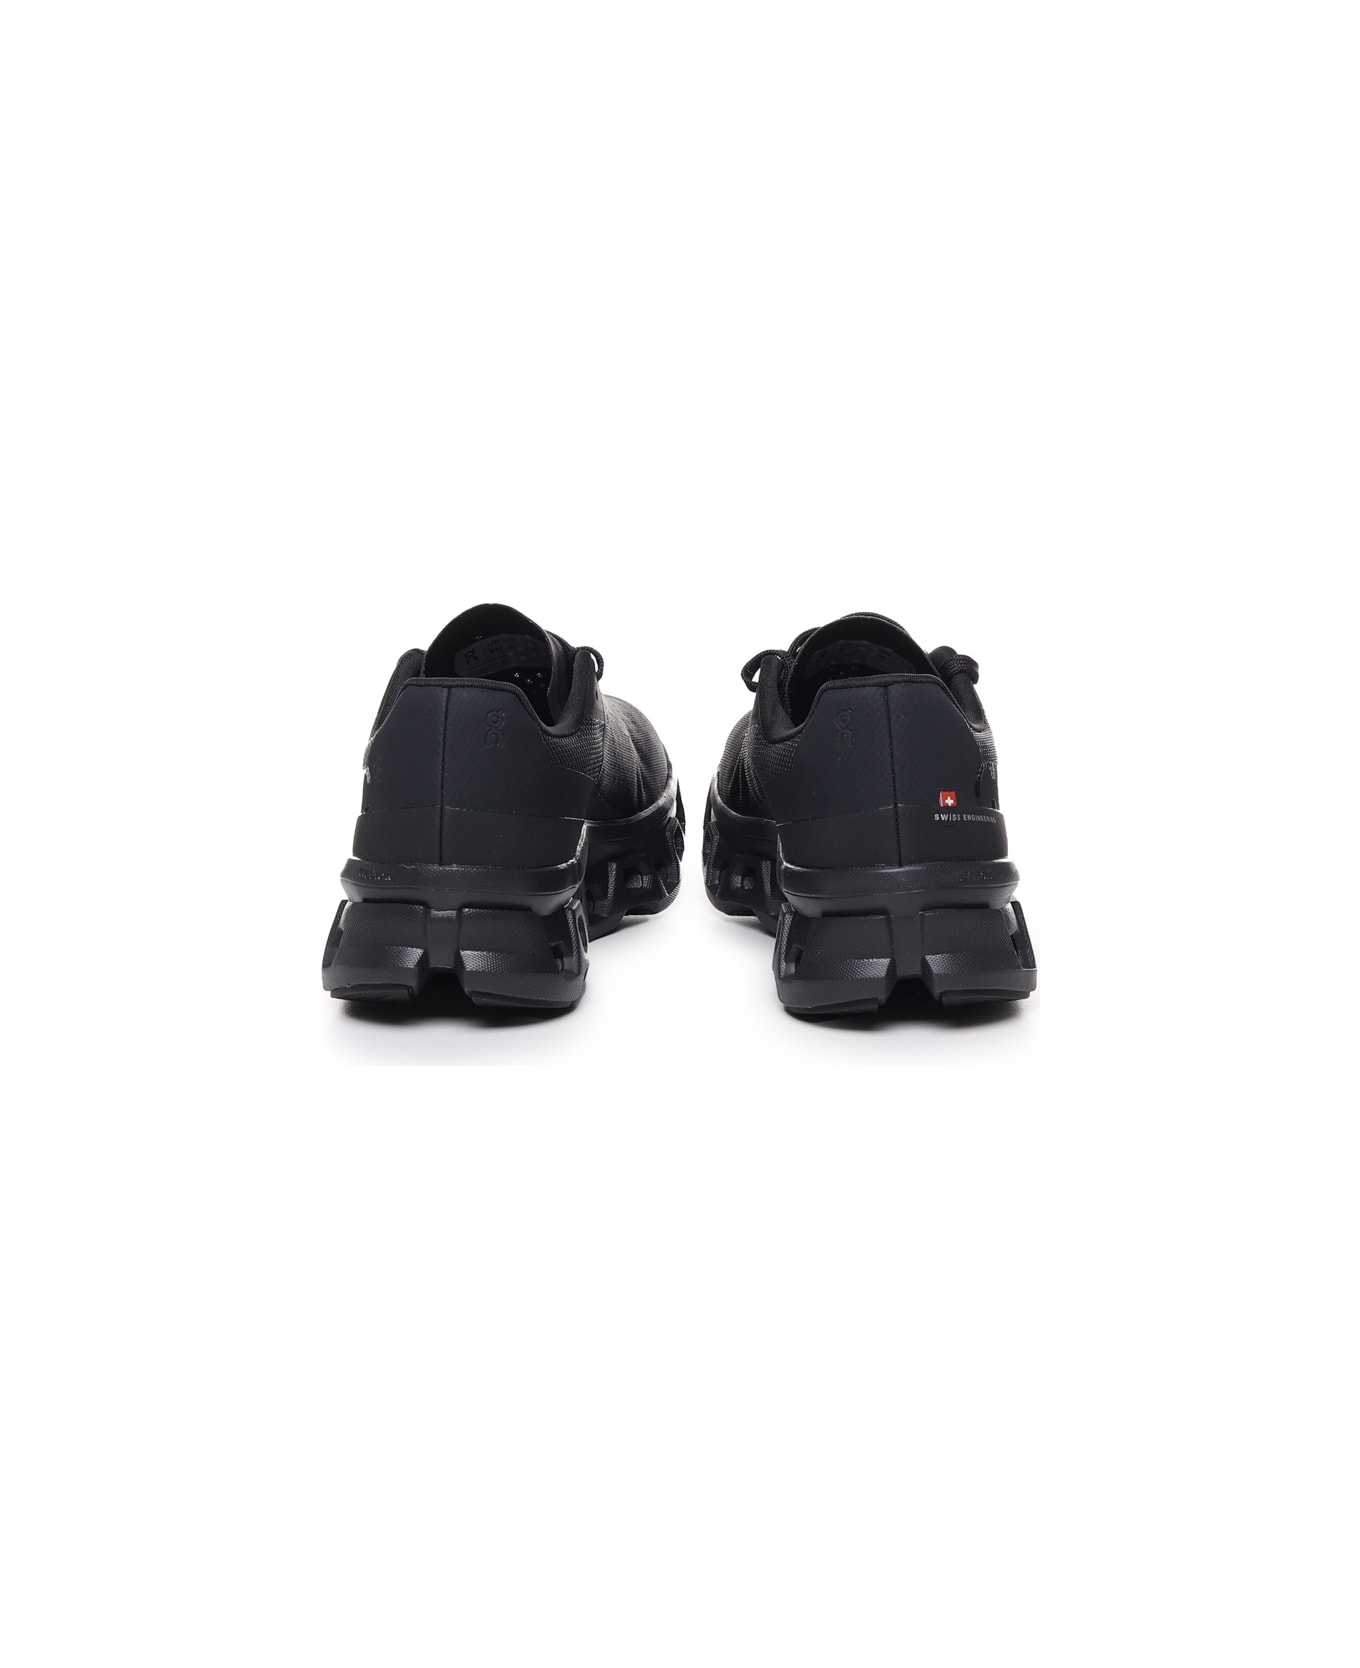 ON Cloudmonster Sneakers - Black